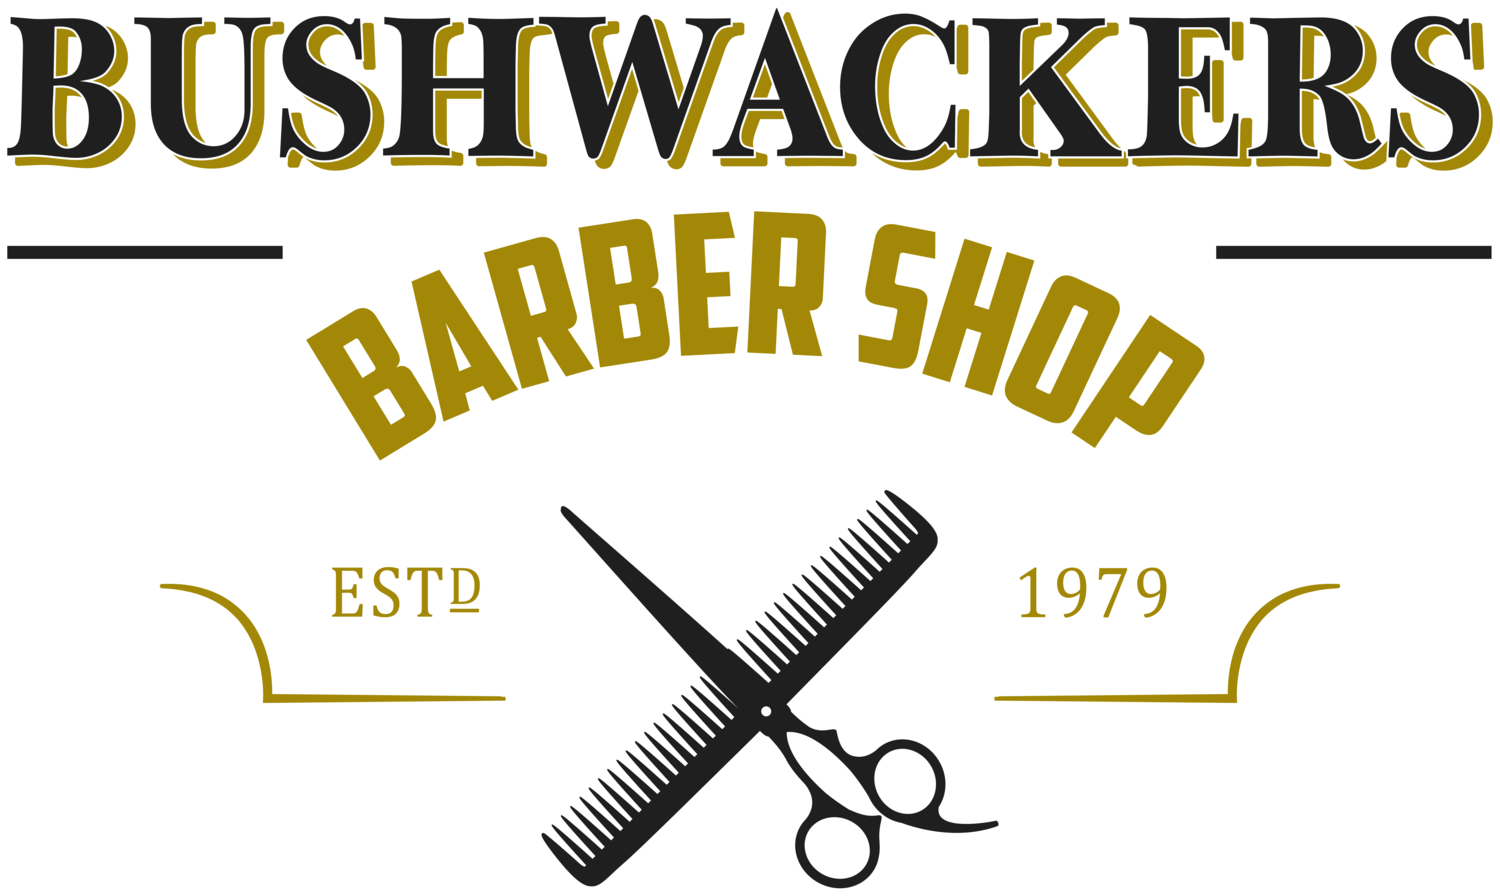 Bushwackers Barbershop